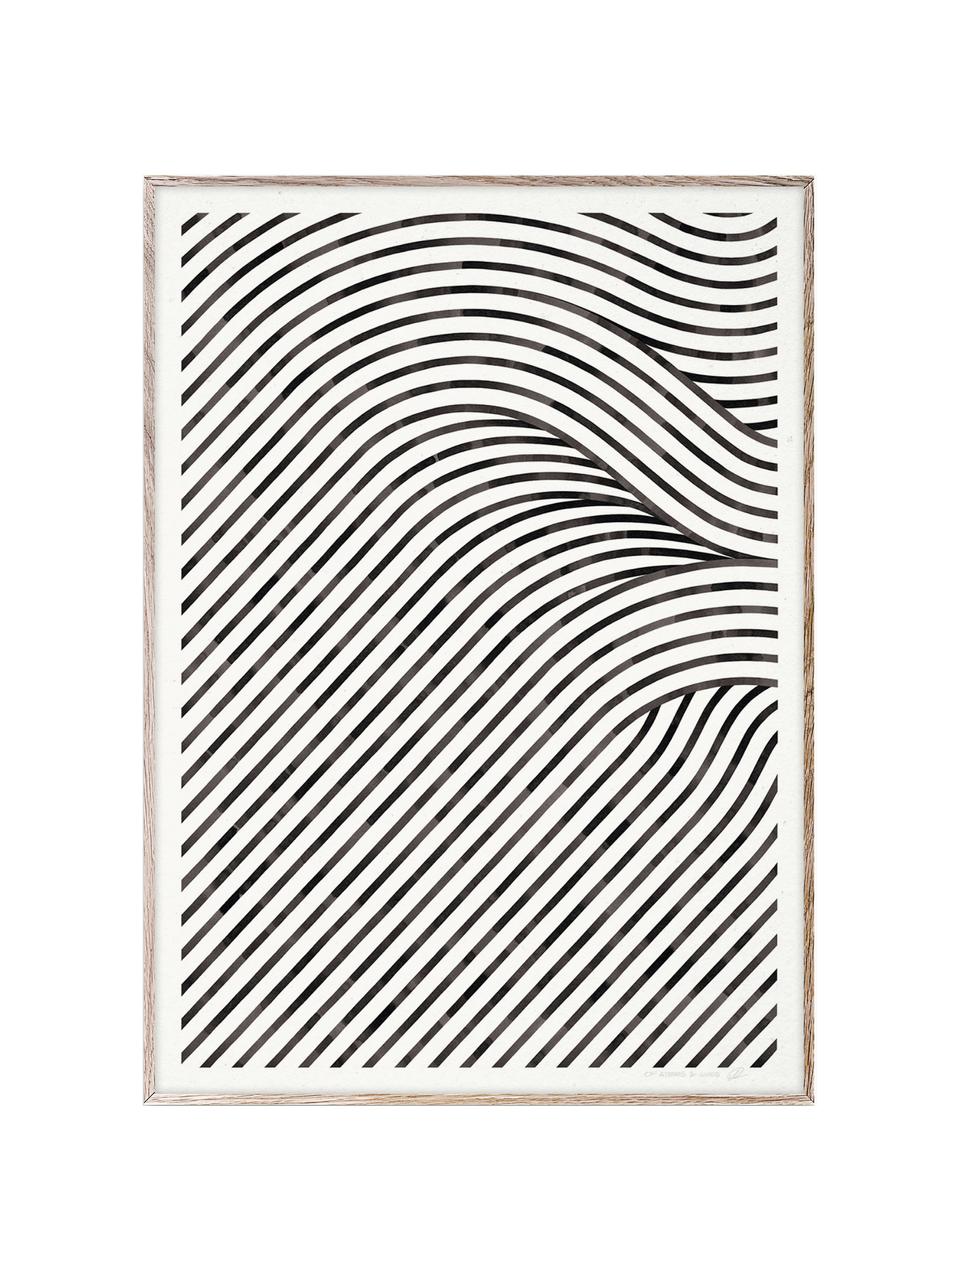 Poster Quantum Fields 02, 210 g mattes Hahnemühle-Papier, Digitaldruck mit 10 UV-beständigen Farben, Weiß, Schwarz, B 30 x H 40 cm